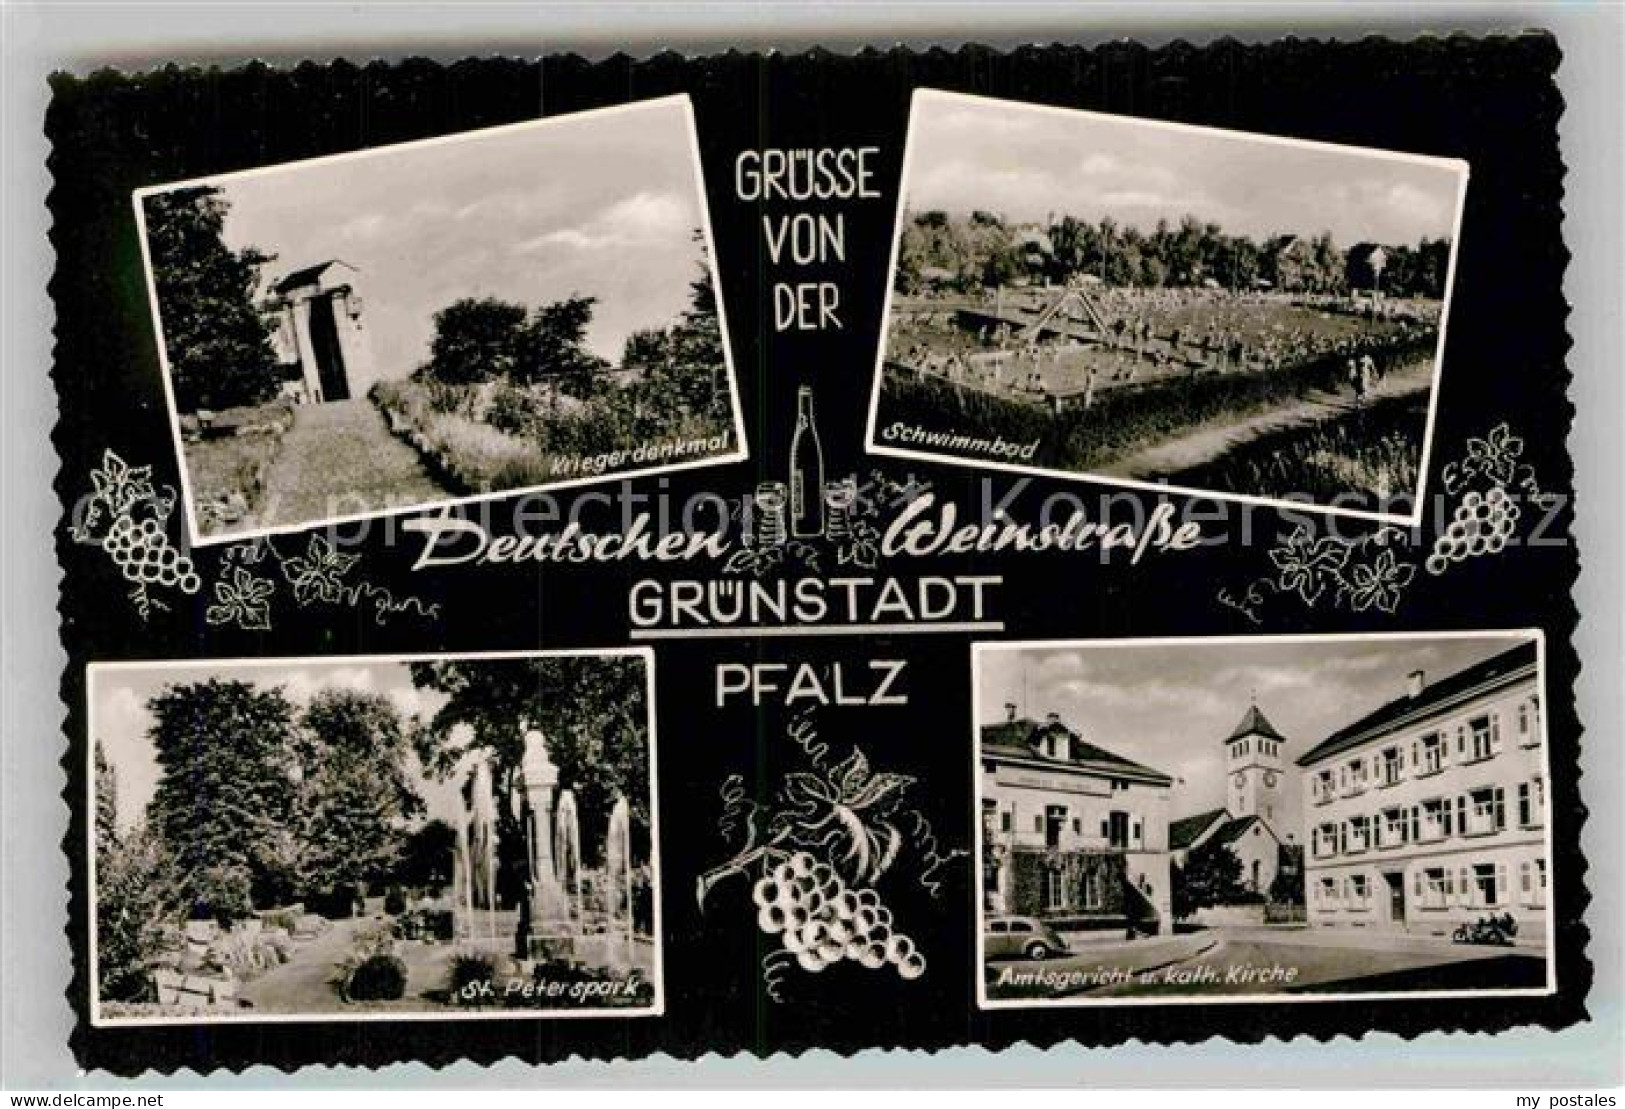 42876295 Gruenstadt Kriegerdenkmal Schwimmbad St Peterspark Amtsgericht Kath Kir - Grünstadt